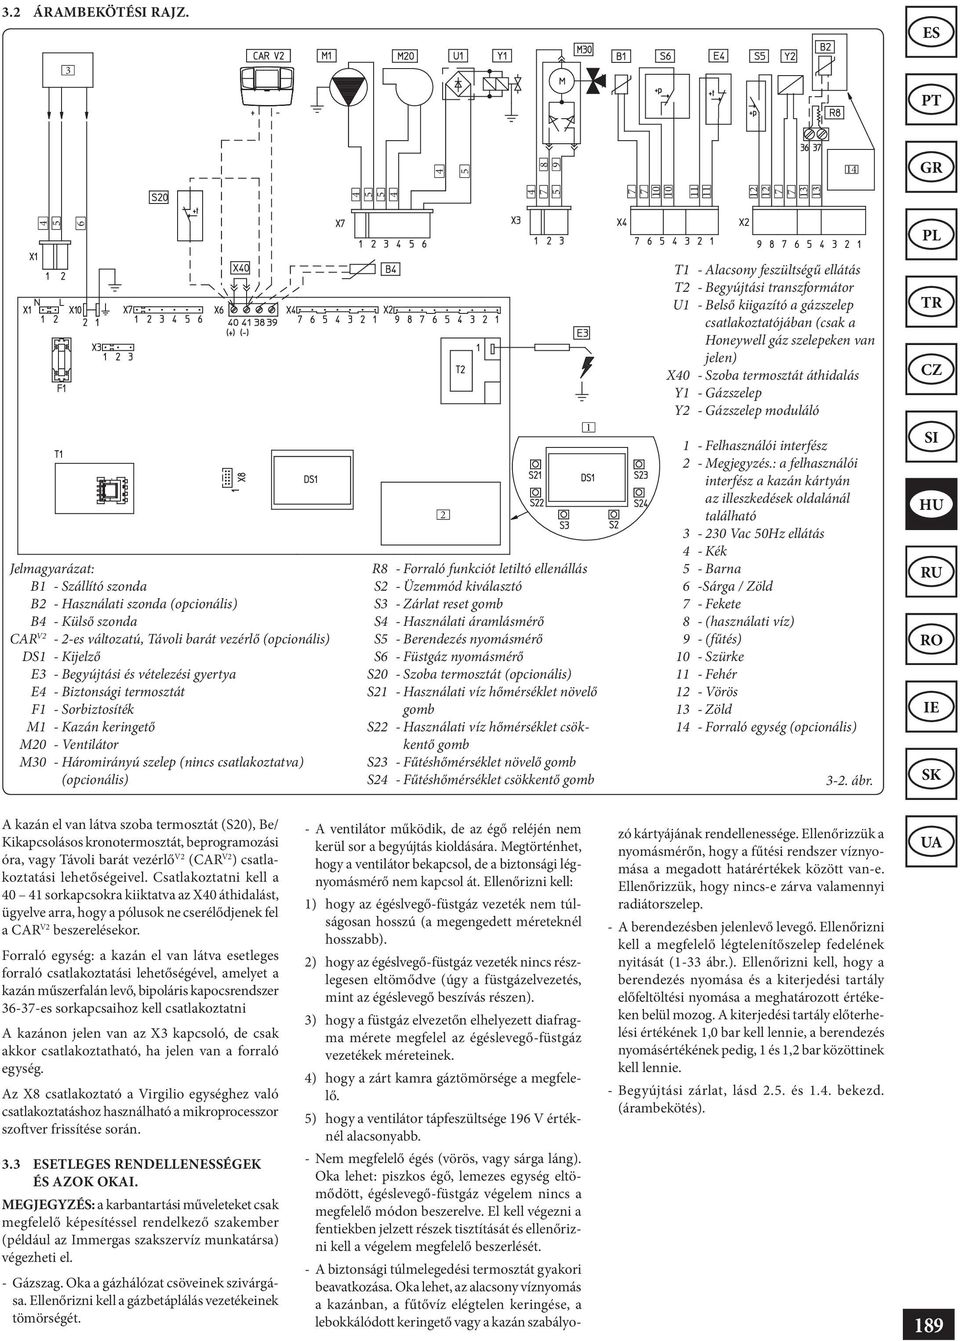 vezérlő (opcionális) DS1 - Kijelző E3 - Begyújtási és vételezési gyertya E4 - Biztonsági termosztát F1 - Sorbiztosíték M1 - Kazán keringető M20 - Ventilátor M30 - Háromirányú szelep (nincs